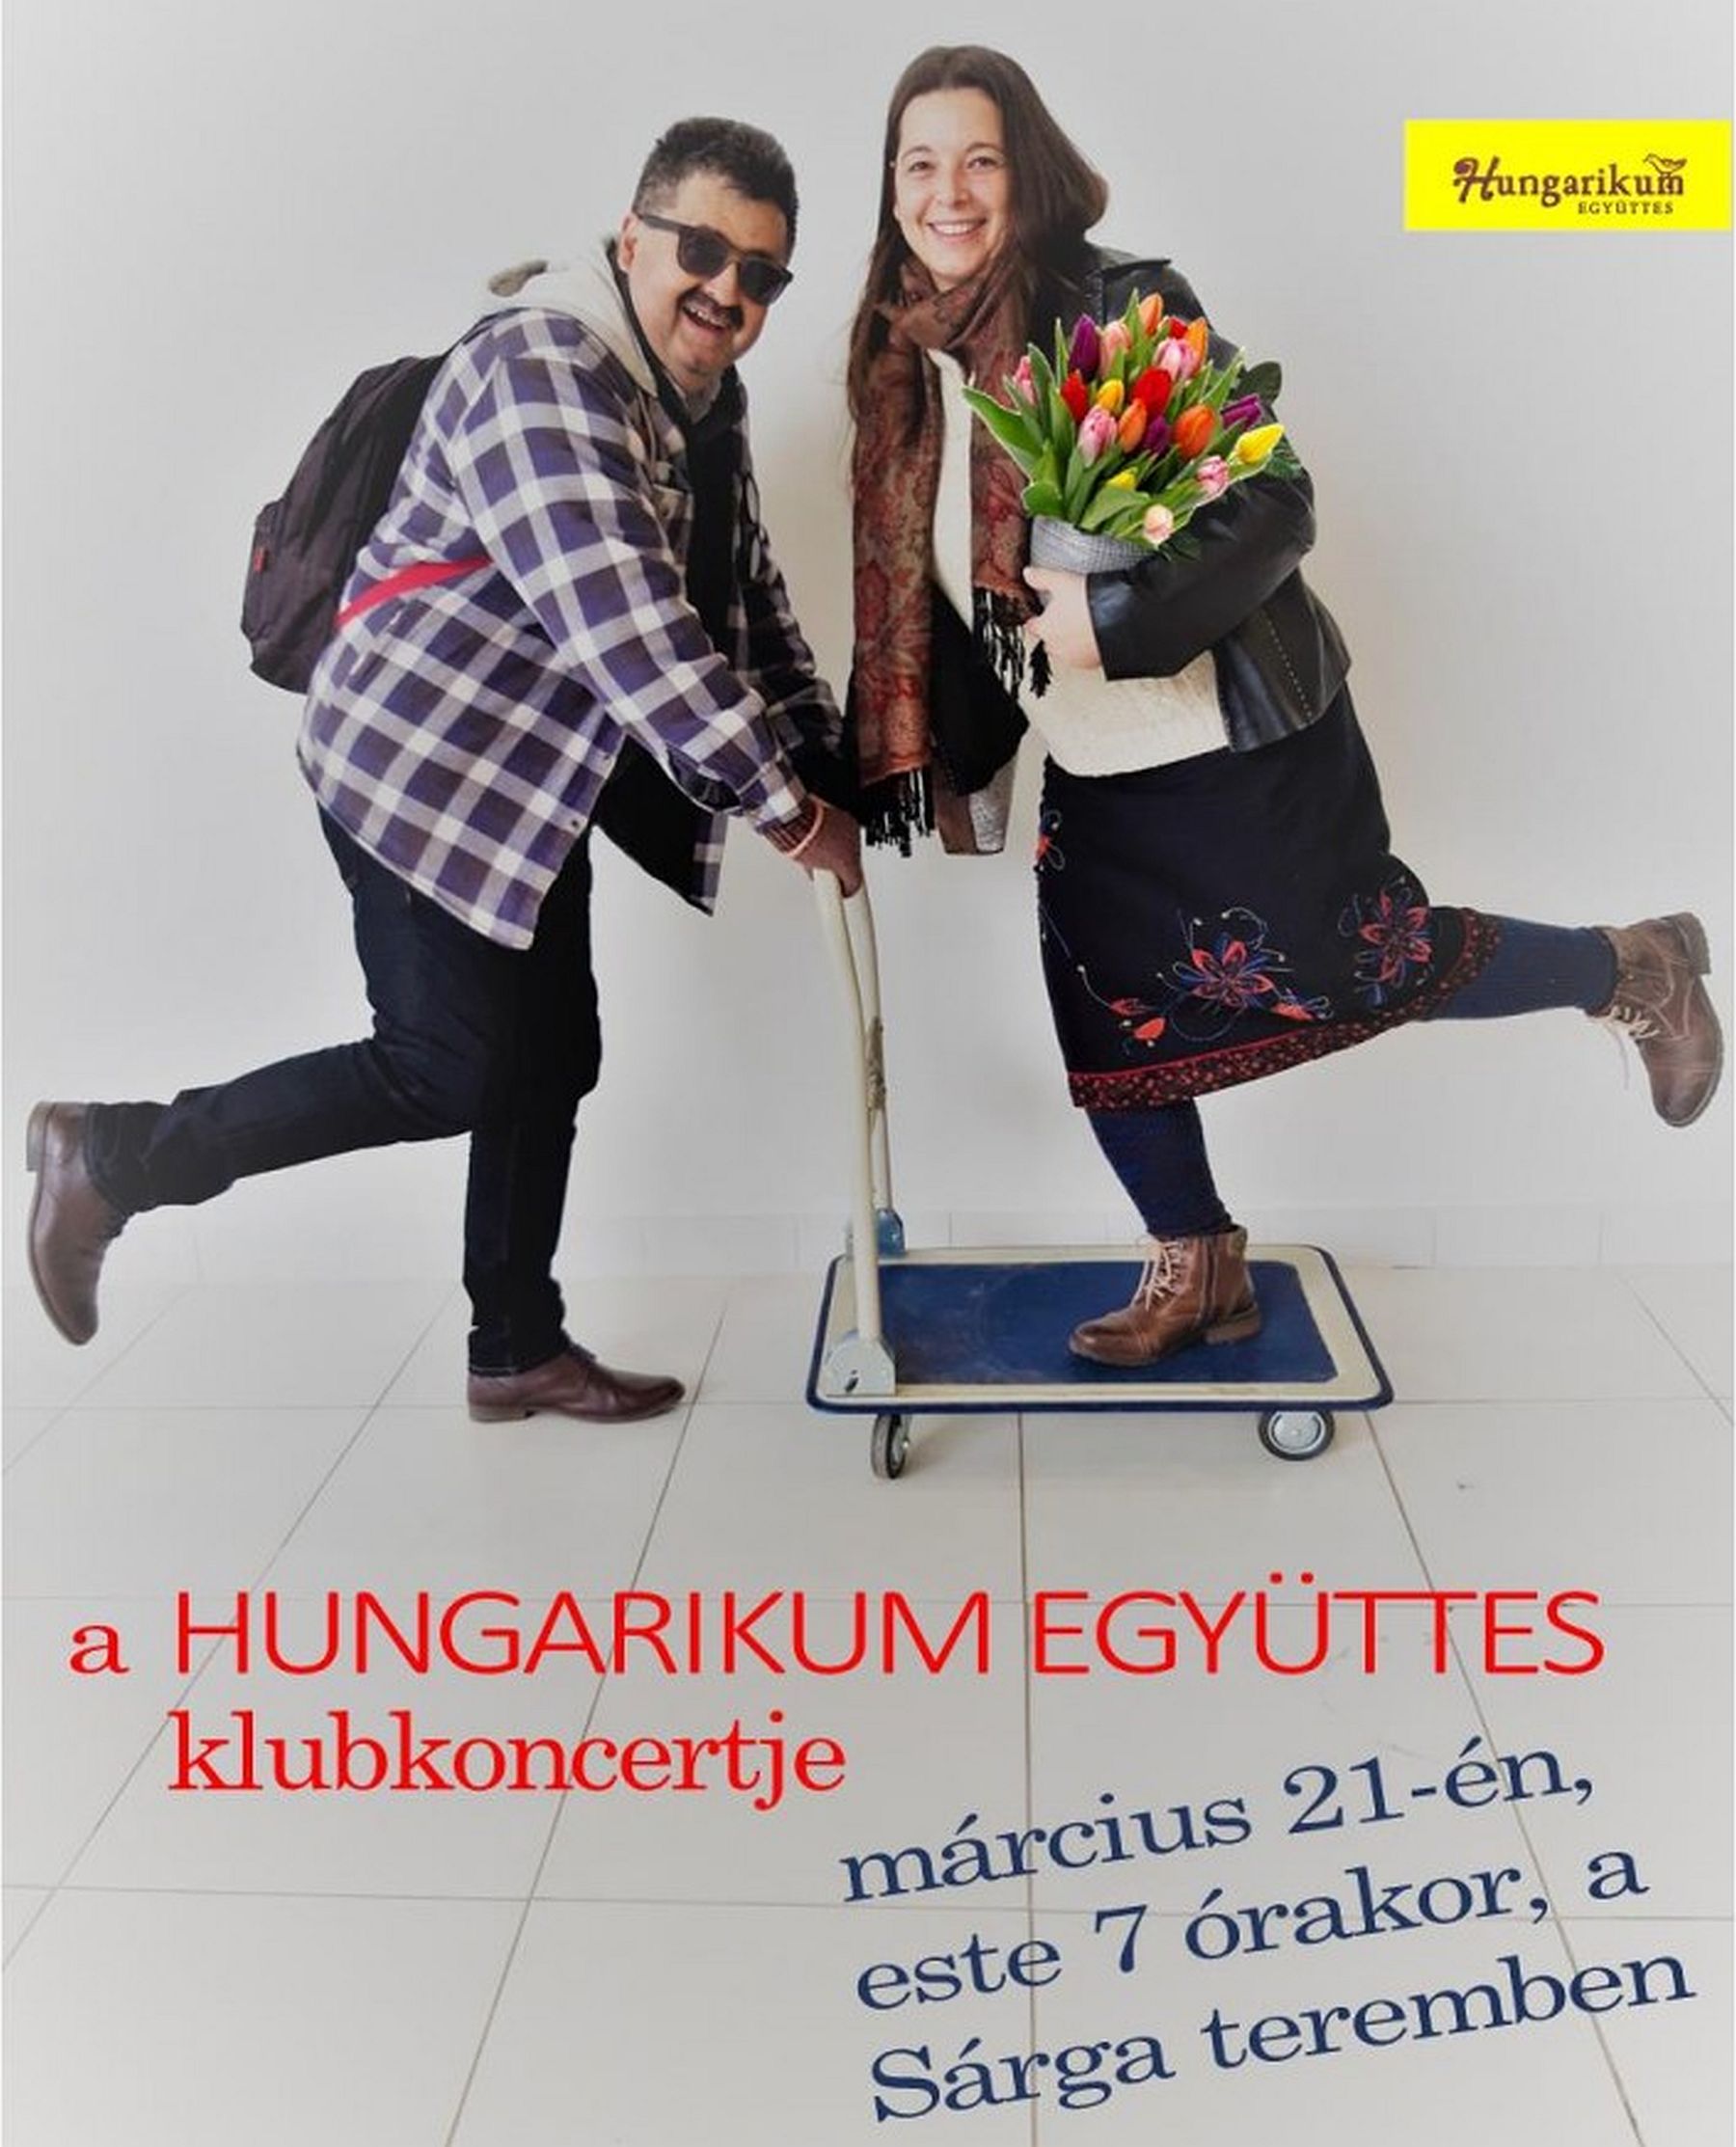 Hungarikum klubkoncert lesz csütörtökön a Szabadművelődés Házában